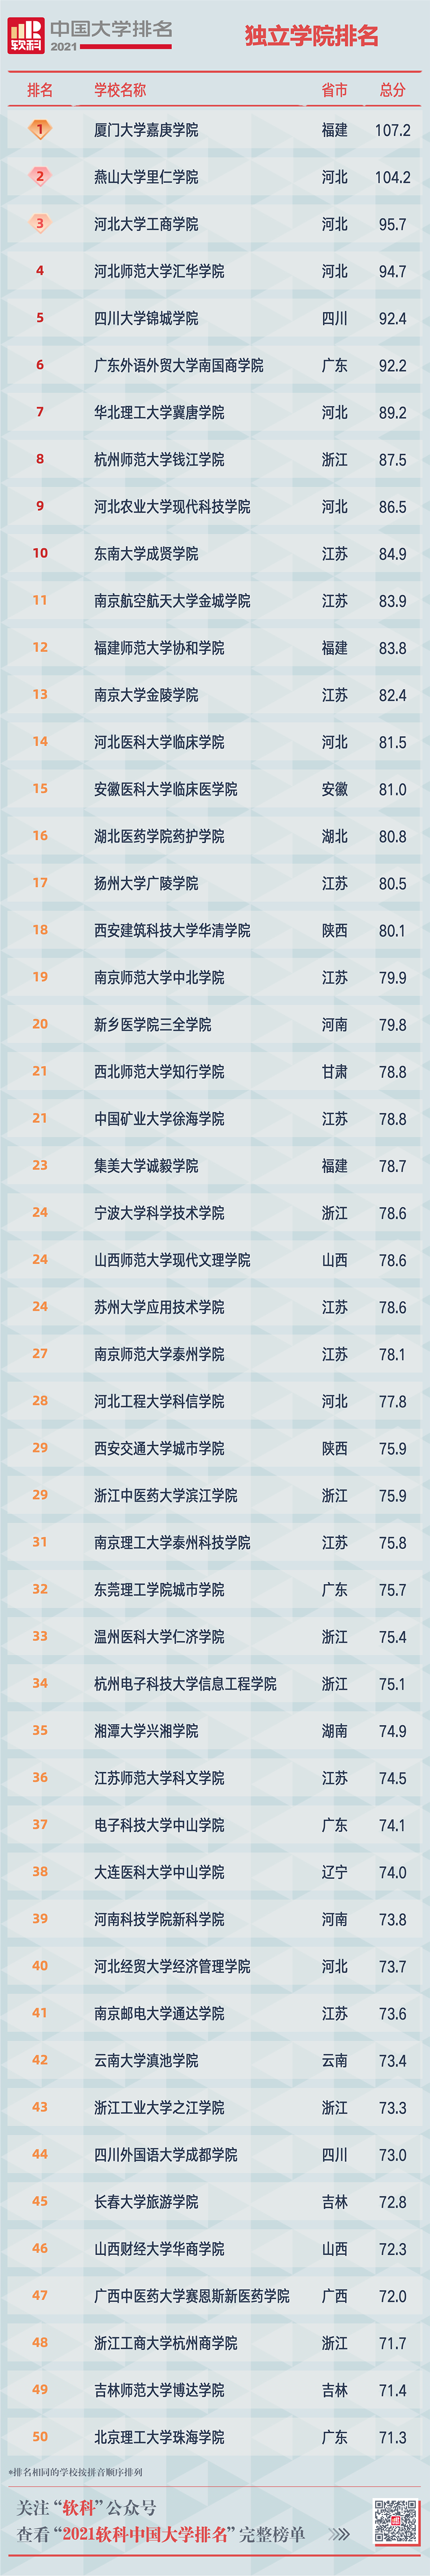 2021软科中国大学排名重磅发布 广东中山大学位列第12位  排名 CWUR排名 第21张